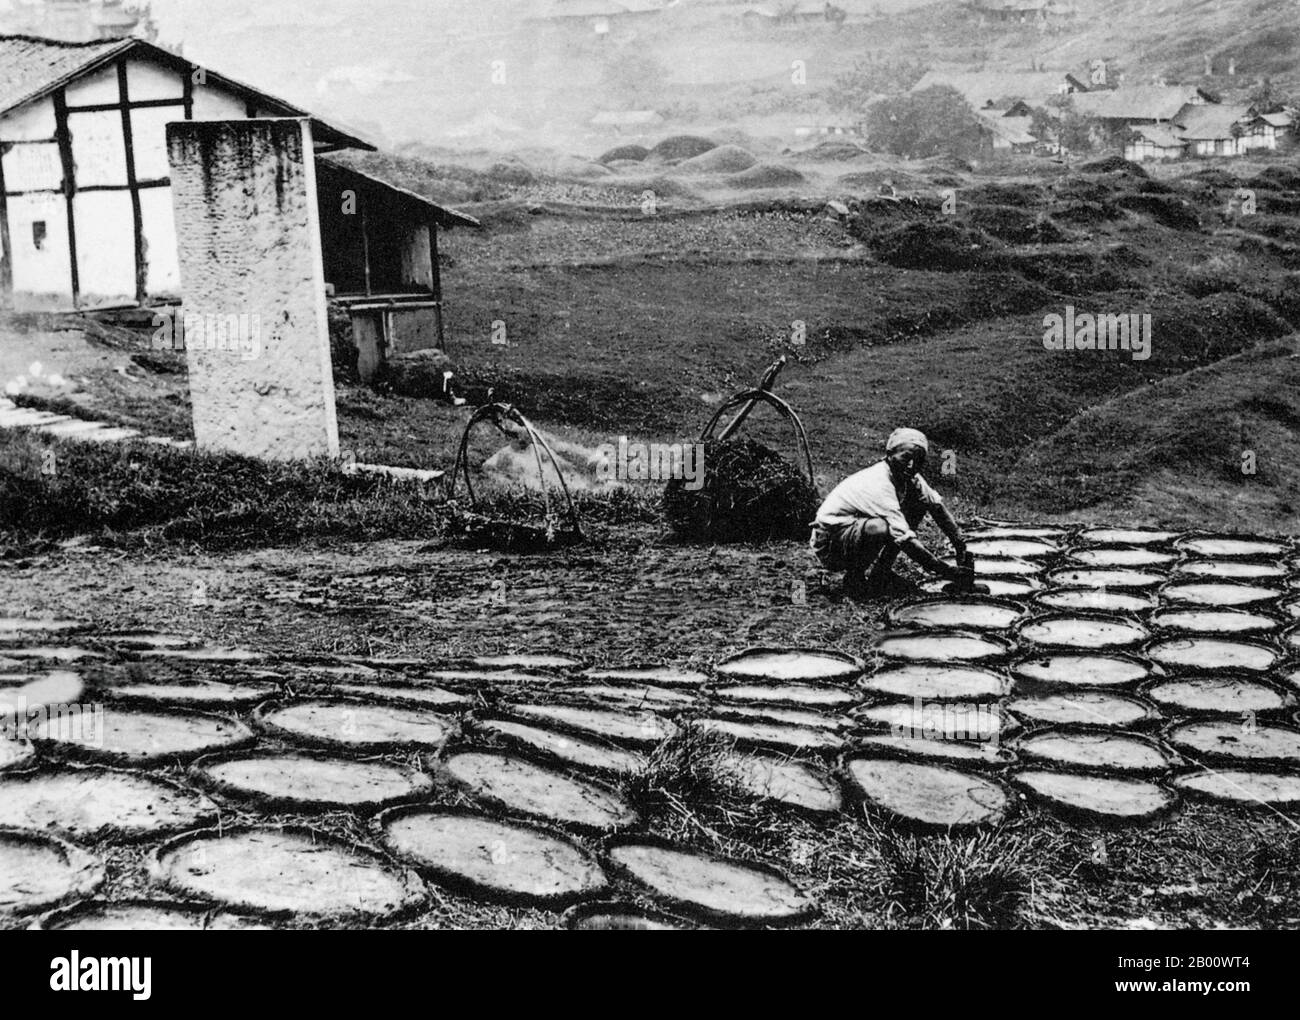 Tibet/China: Ein tibetischer Bauer in der Stadt Atentze legt Yakmist zum Trocknen aus, bevor er als Brennstoff verwendet wird; fotografiert 1900. Ländliche Tibeter sammeln oft täglich Yakmist von den Pfaden, um auszutrocknen und als Brennstoff für Feuer zu verwenden. Die Sherpa-Leute verlassen sich auf kleine Eisenöfen, um ihre Häuser zu heizen und in ihrer Küche zu kochen. Oberhalb einer bestimmten Höhe gibt es einfach kein Holz zu finden, und die chinesische Regierung hat strenge Beschränkungen für den Holzeinschlag in den geschützten Himalaya-Wäldern gesetzt. Stockfoto